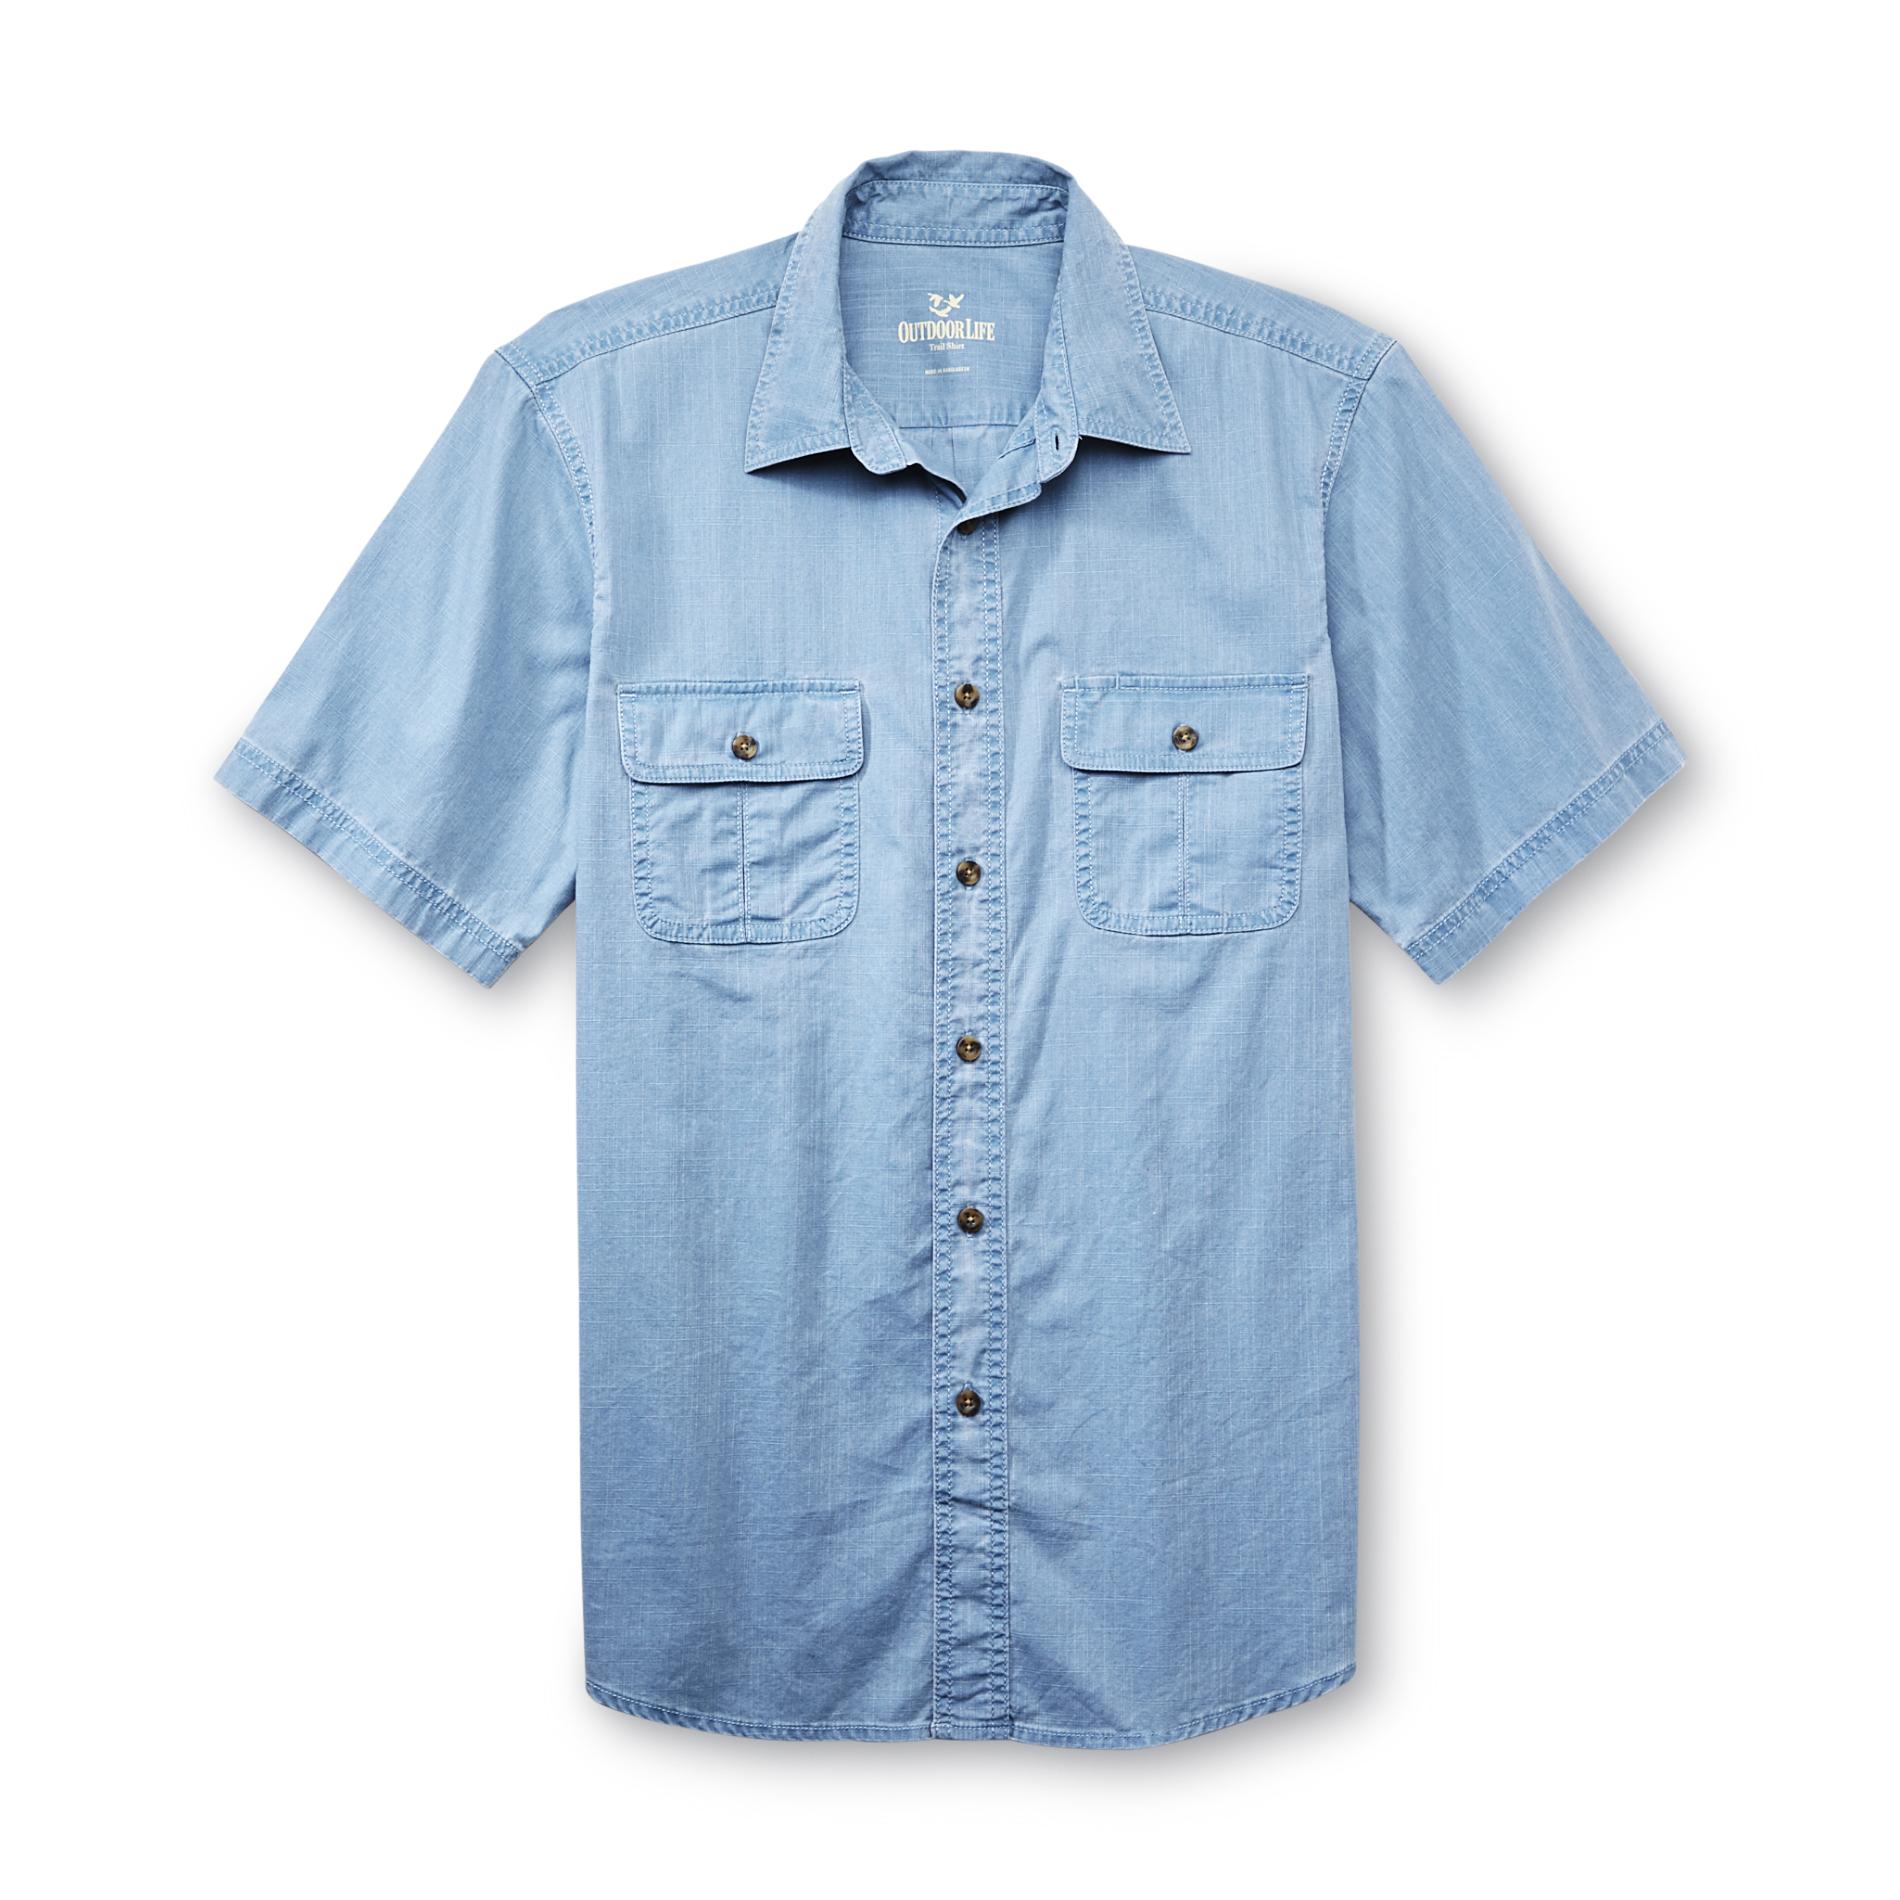 Outdoor Life&reg; Men's Short-Sleeve Dress Shirt - Cotton Twill